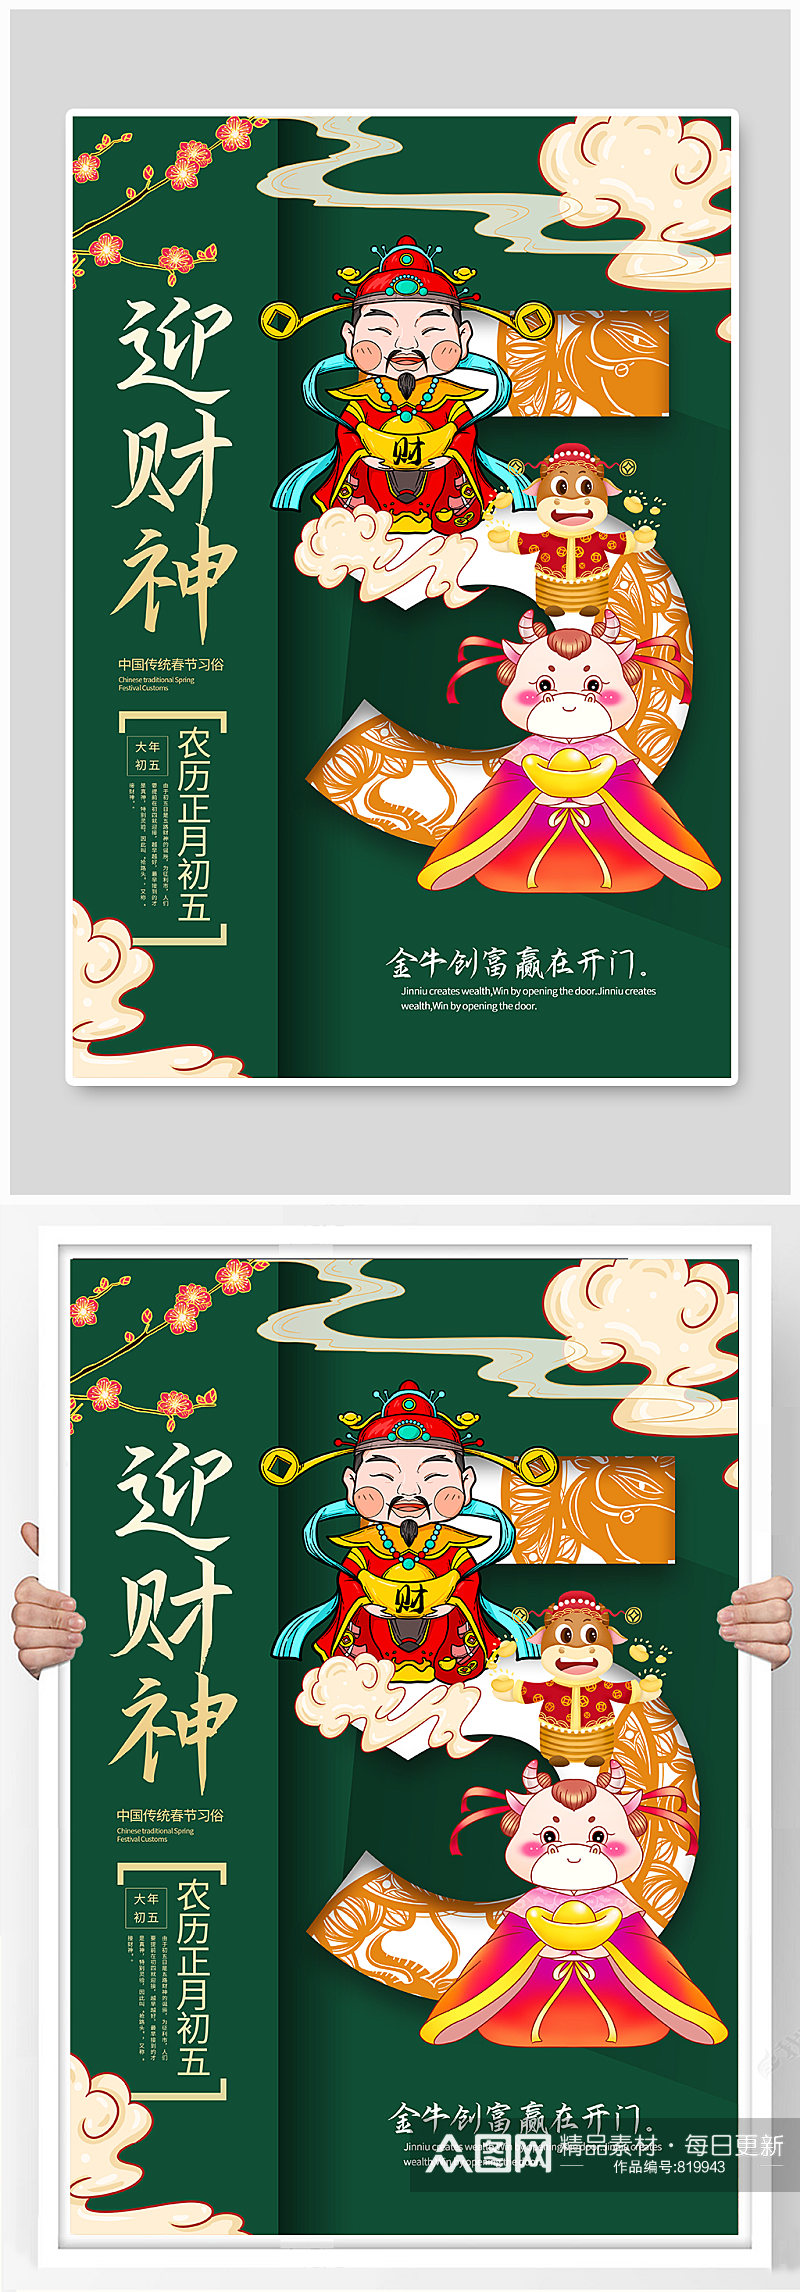 迎财神春节宣传海报素材